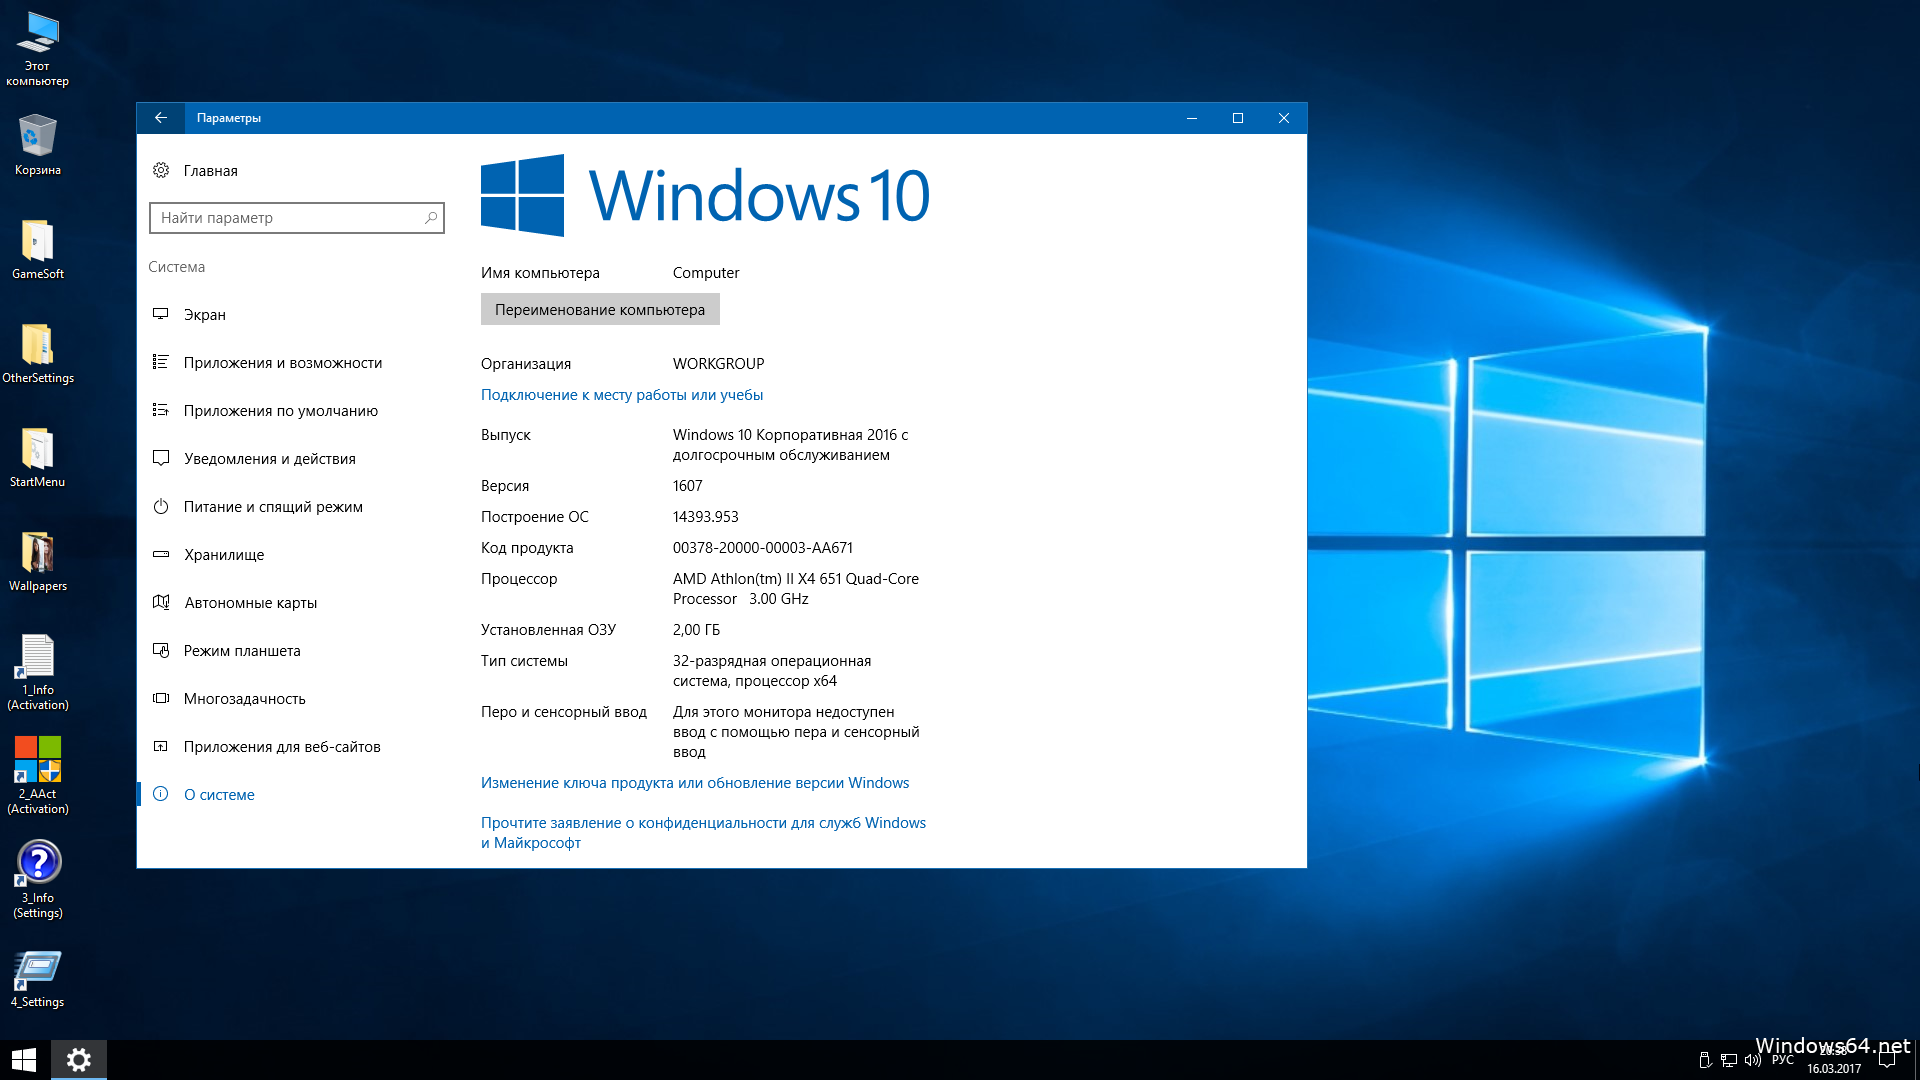 Последние версии операционной системы. ОС Microsoft Windows 10. Windows 10 Enterprise. Microsoft Windows 10 корпоративная. Windows 10 Enterprise 2016 LTSB.